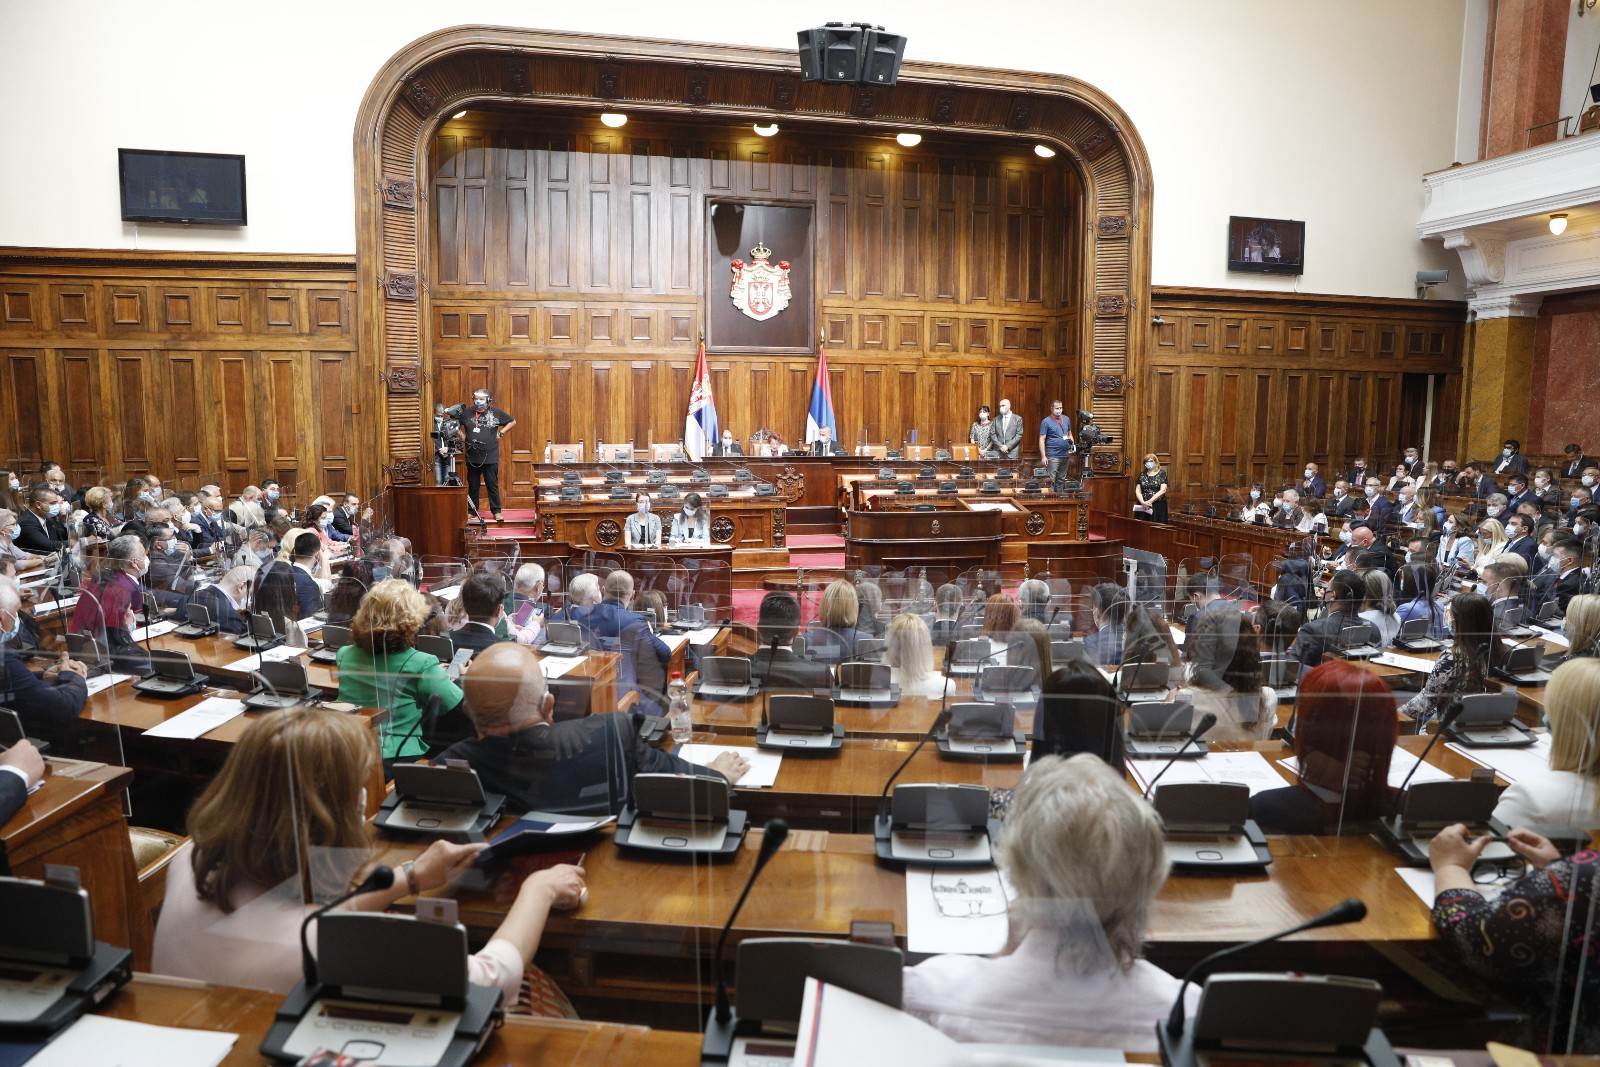  Drama u Skupštini Srbije: Narodnom poslaniku pozlilo tokom sjednice, hitno prebačen u Urgentni centar 